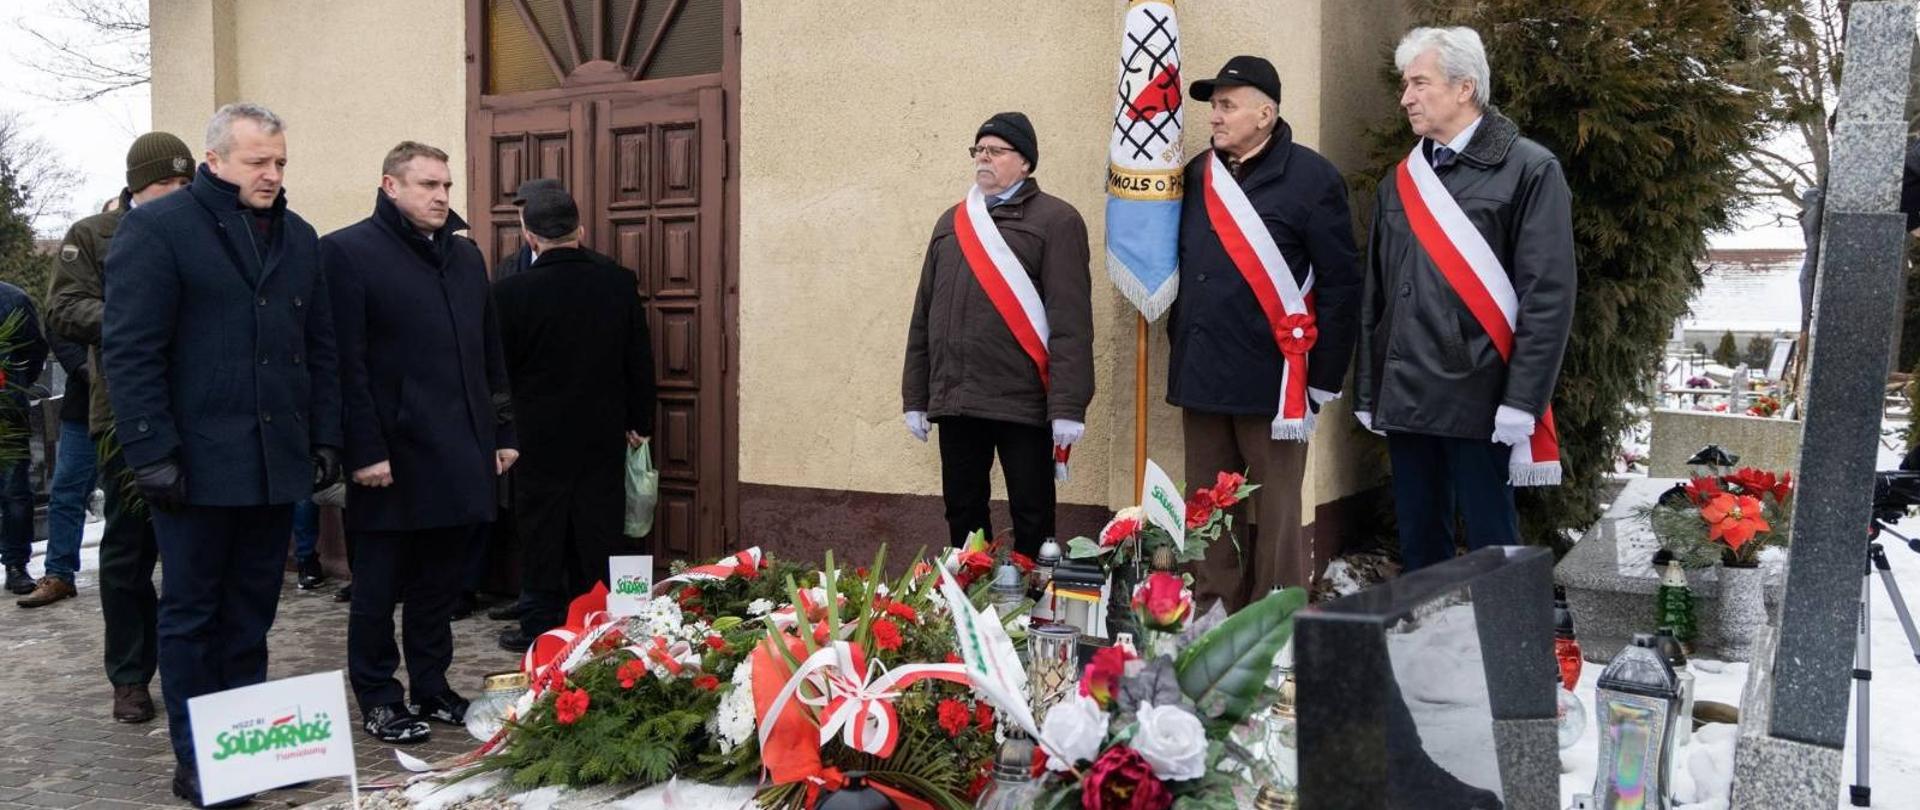 Złożenie kwiatów i zapalenie zniczy na grobie Piotra Bartoszcze 